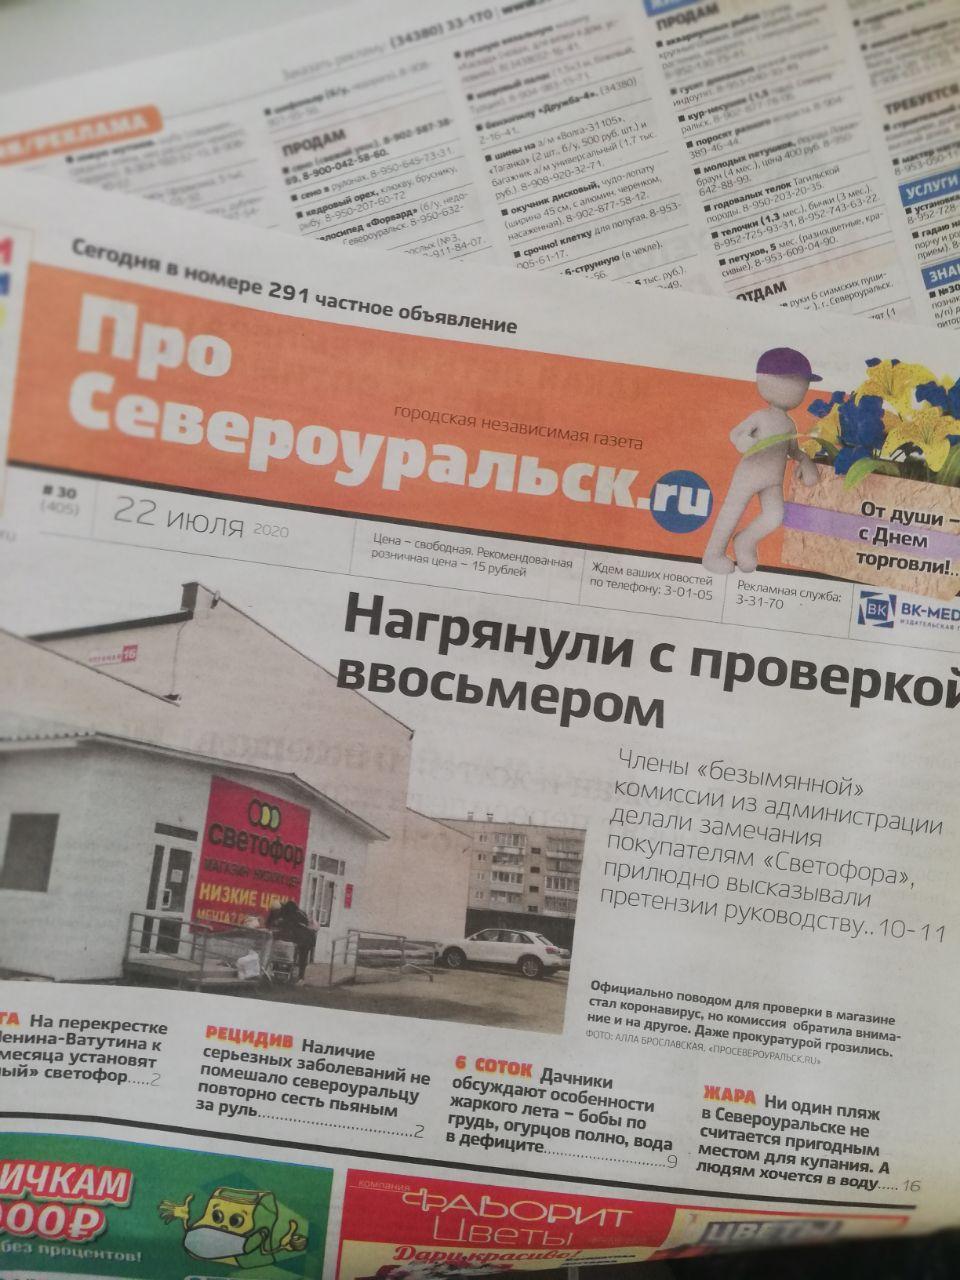 Объявления из газеты "ПроСевероуральск.ru" № 3 от 20 января 2021 года